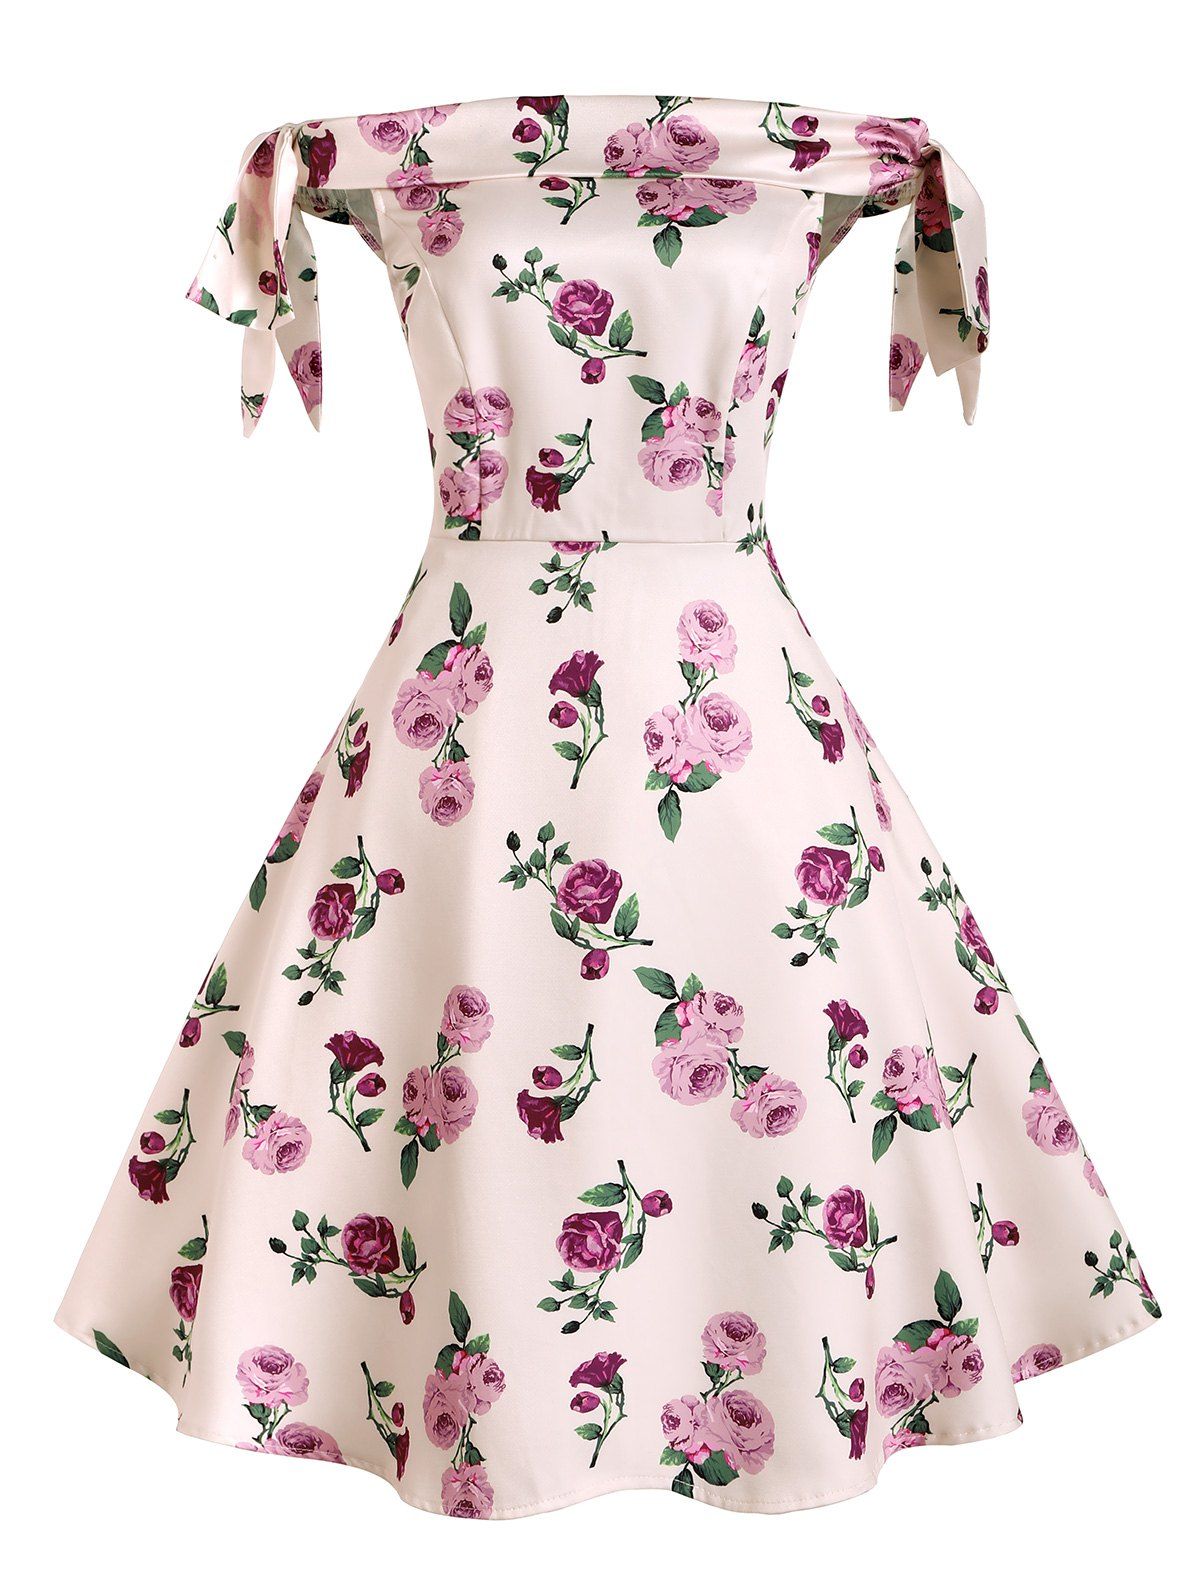 Bowknot Polka Dot Floral Off Shoulder Dress - LIGHT PINK L